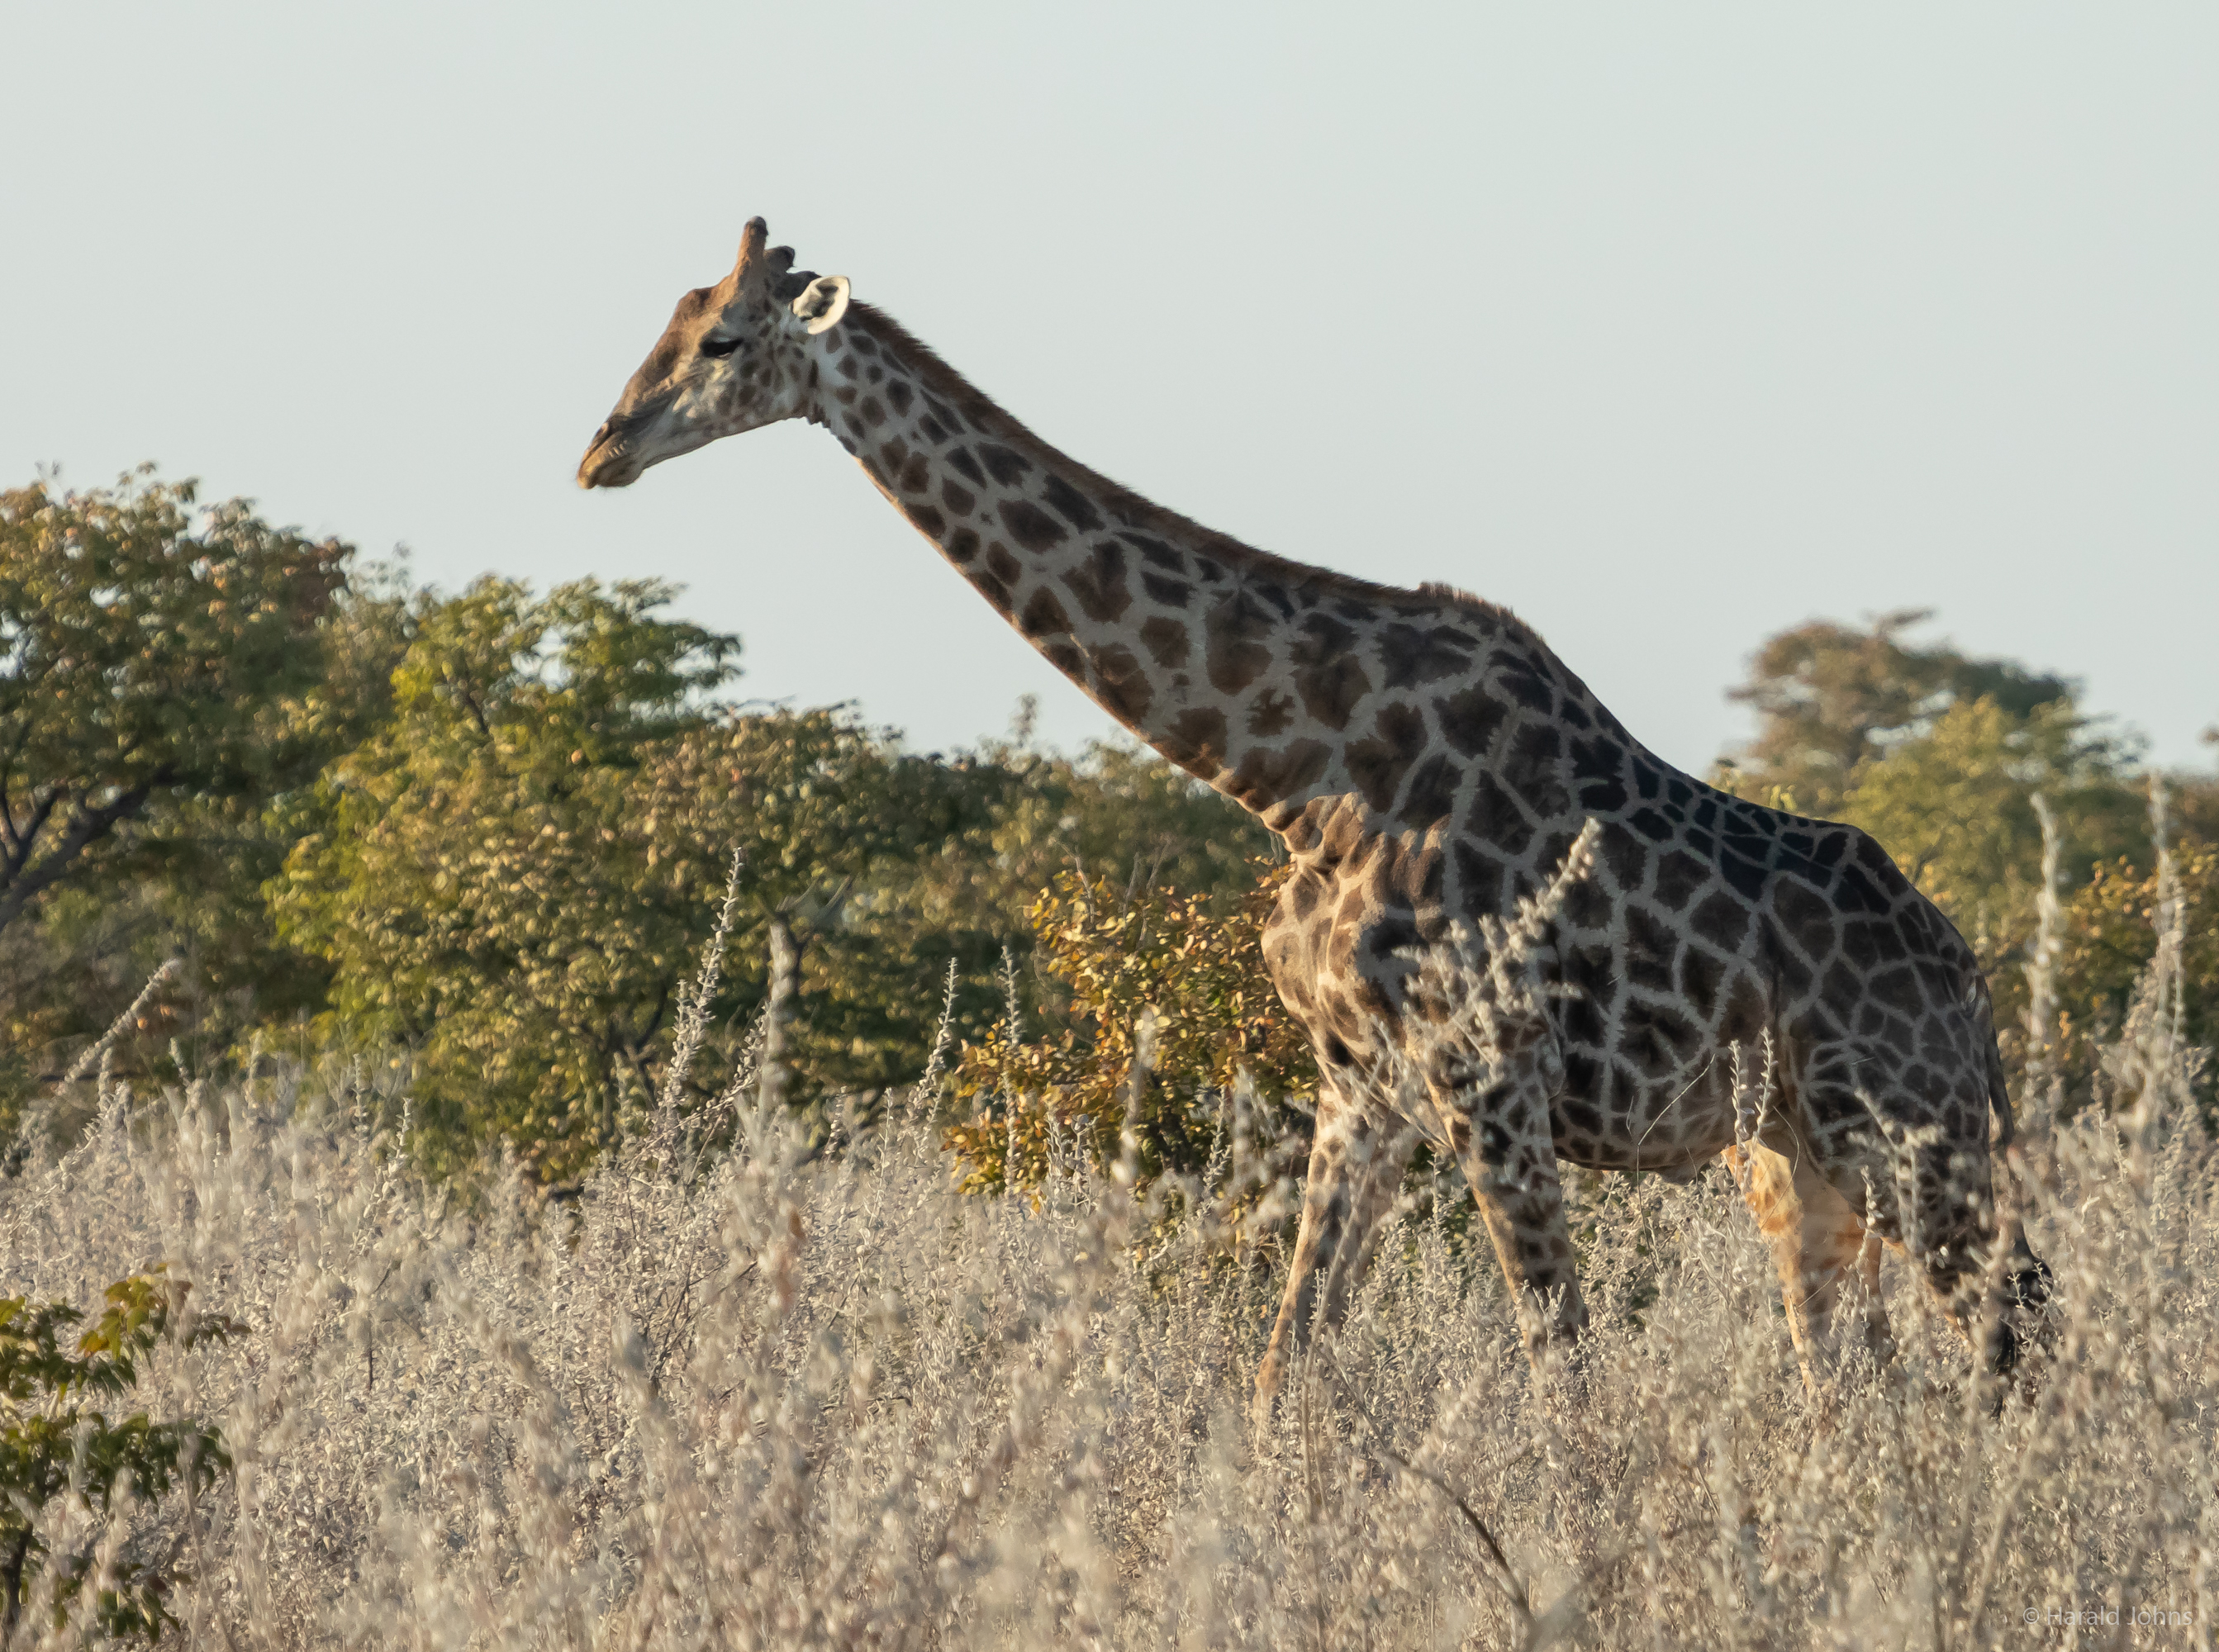 Ein solcher Giraffenbulle wird bis zu 6 Meter hoch.